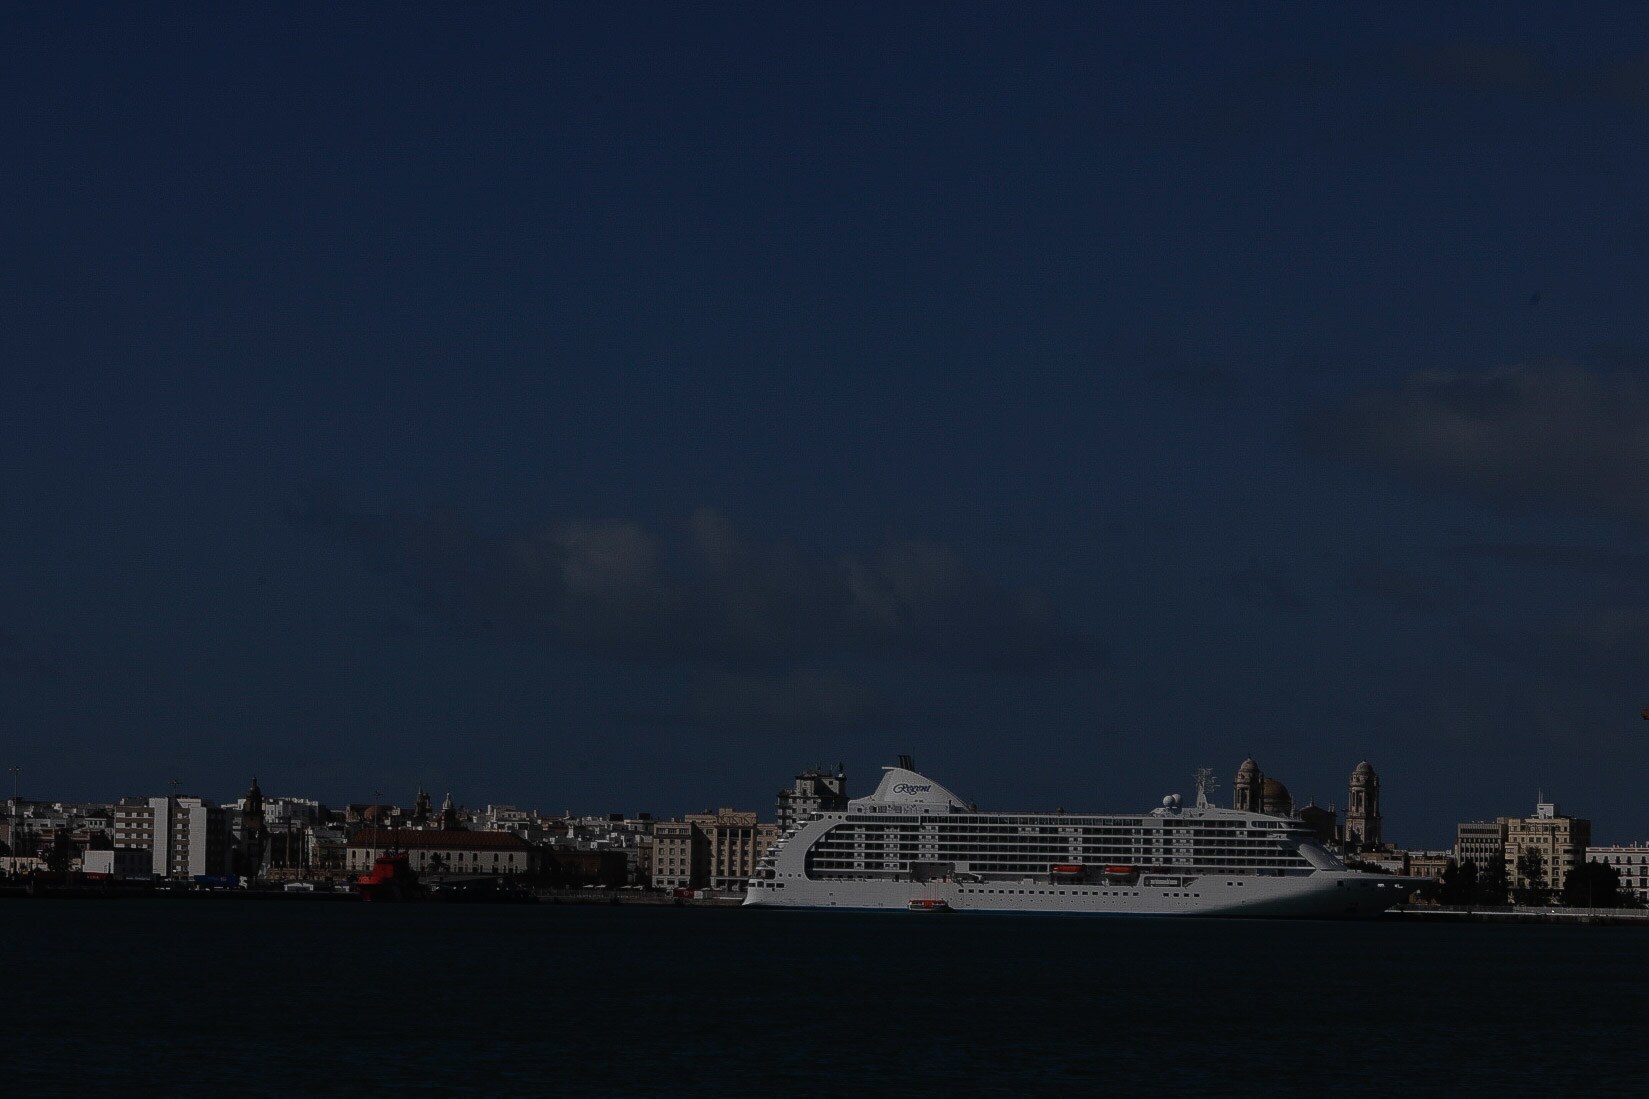 En imágenes: el crucero ‘Seven Seas Voyager’ en el puerto de Cádiz